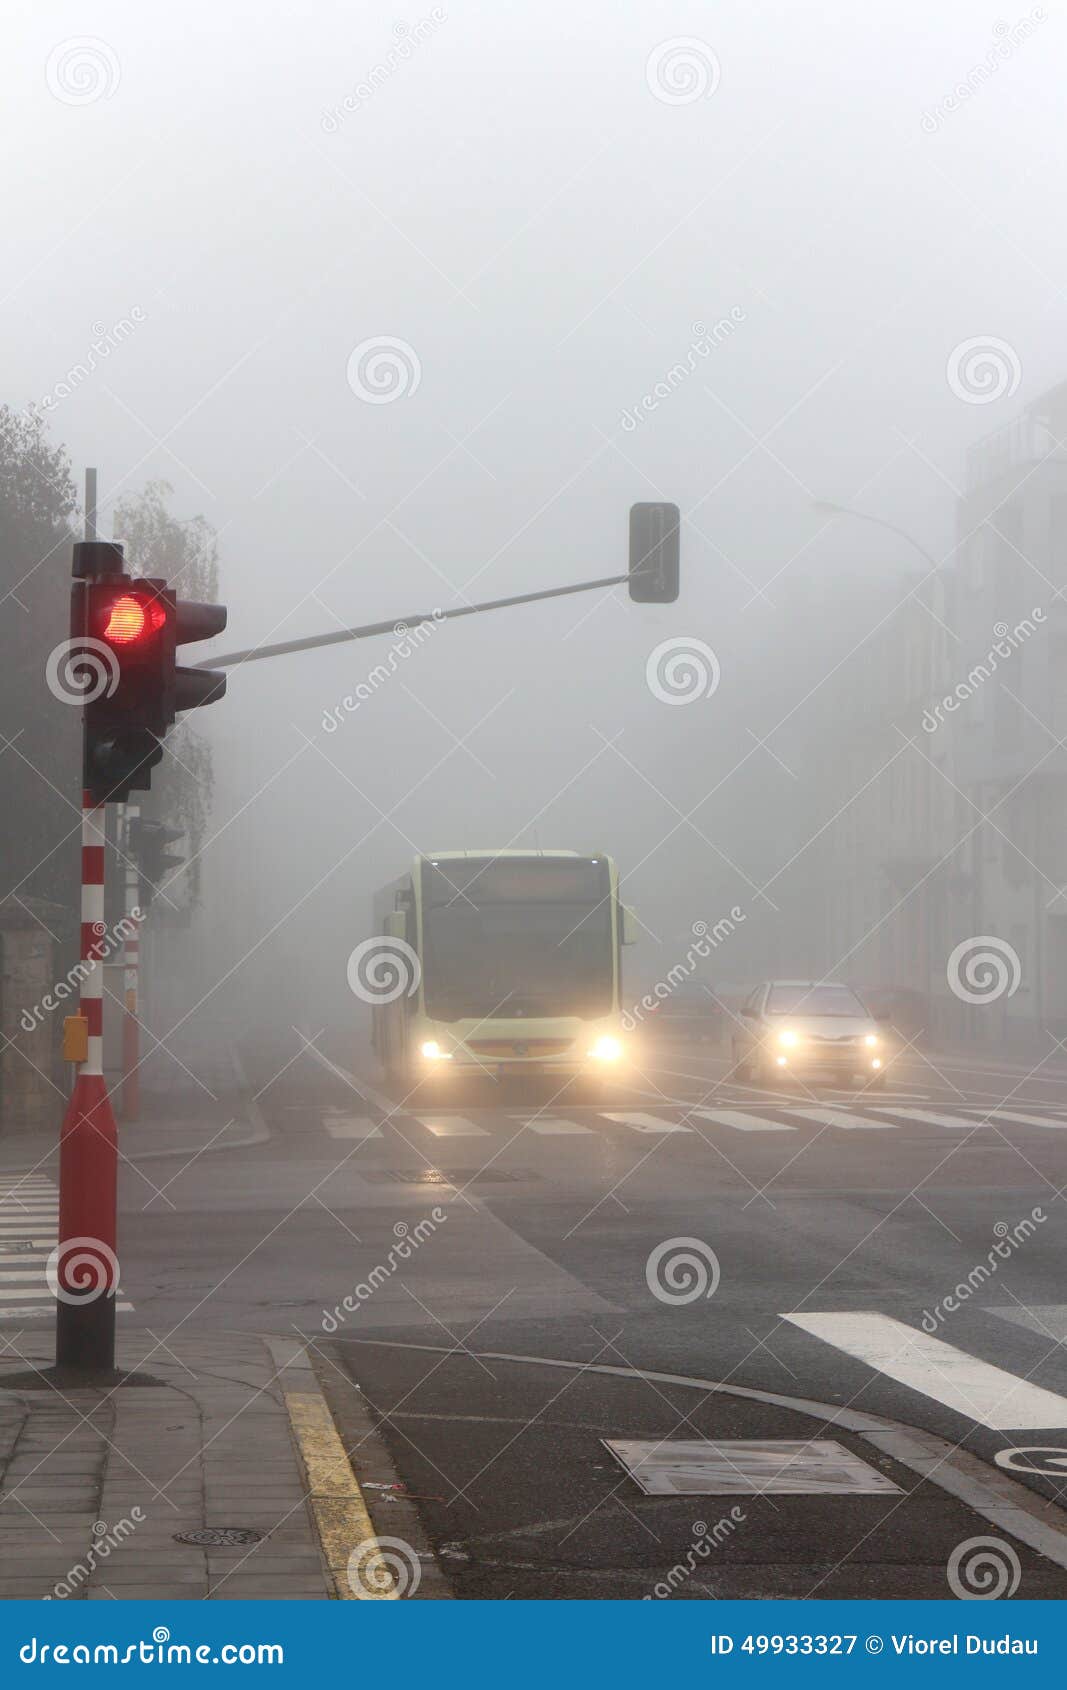 驾驶的恶劣天气情况. 在坏有雾的天气的城市公车运送驾驶和汽车-红色红绿灯停止位置